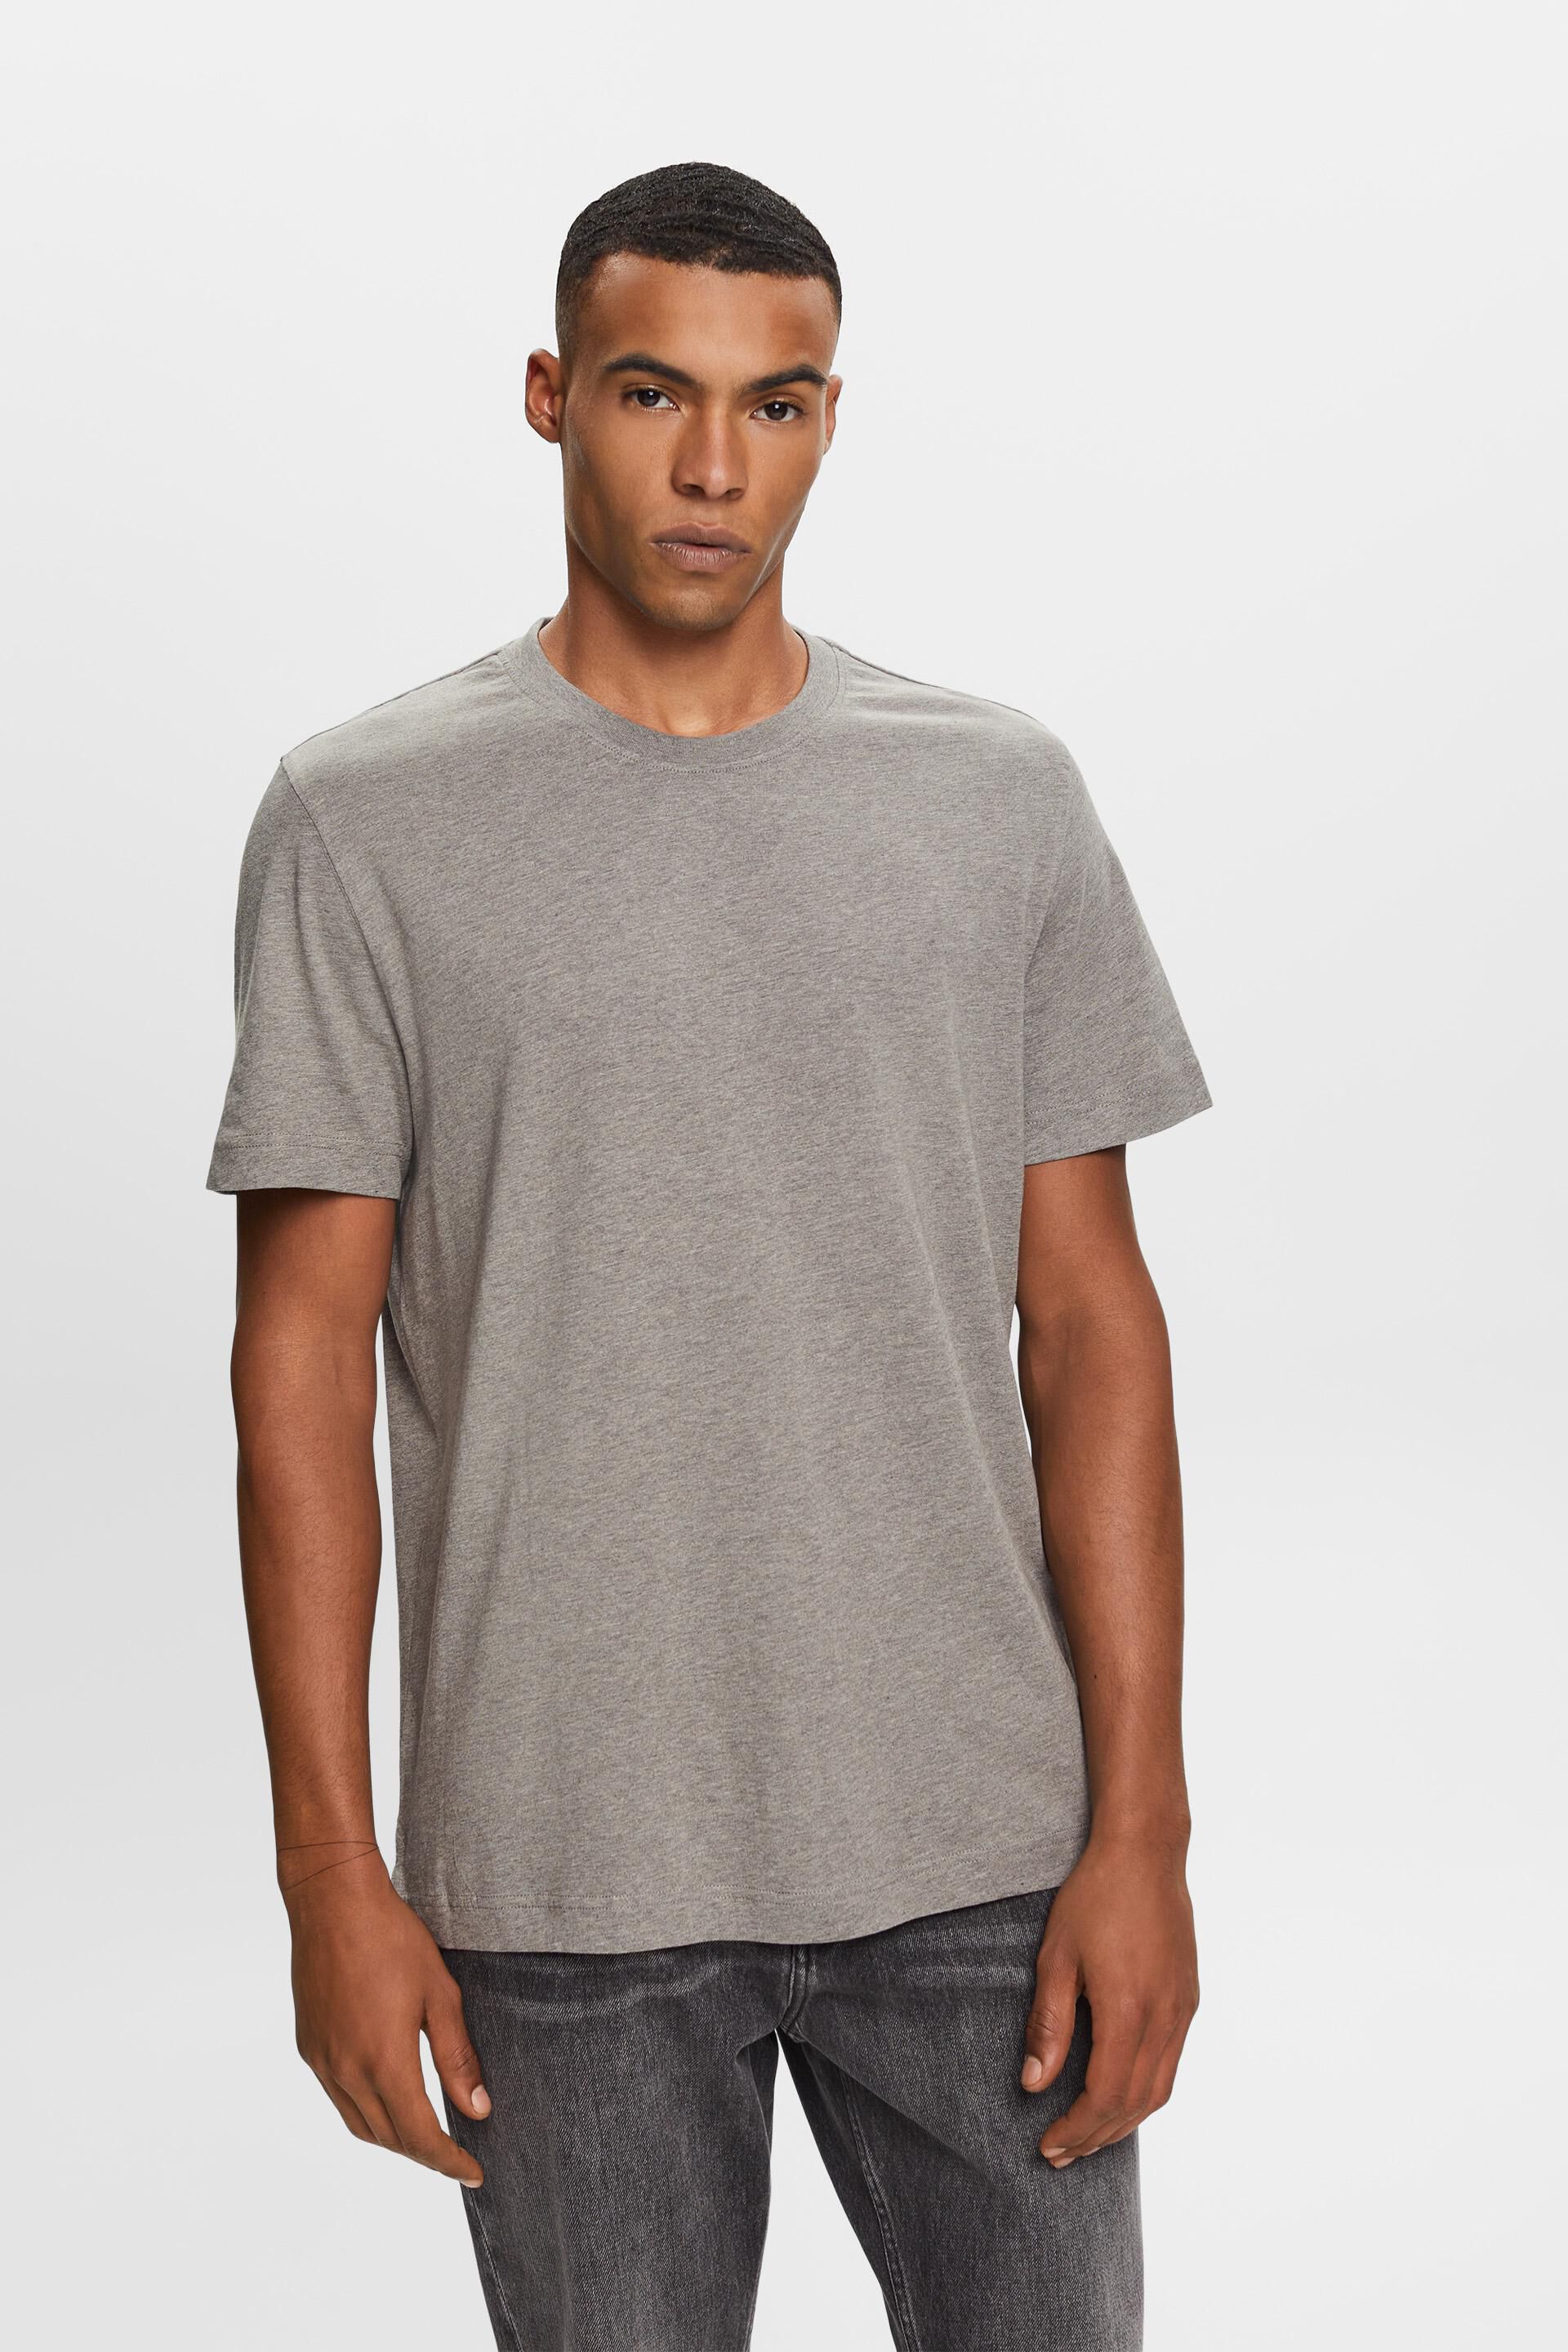 Esprit cotton Crewneck t-shirt, 100%